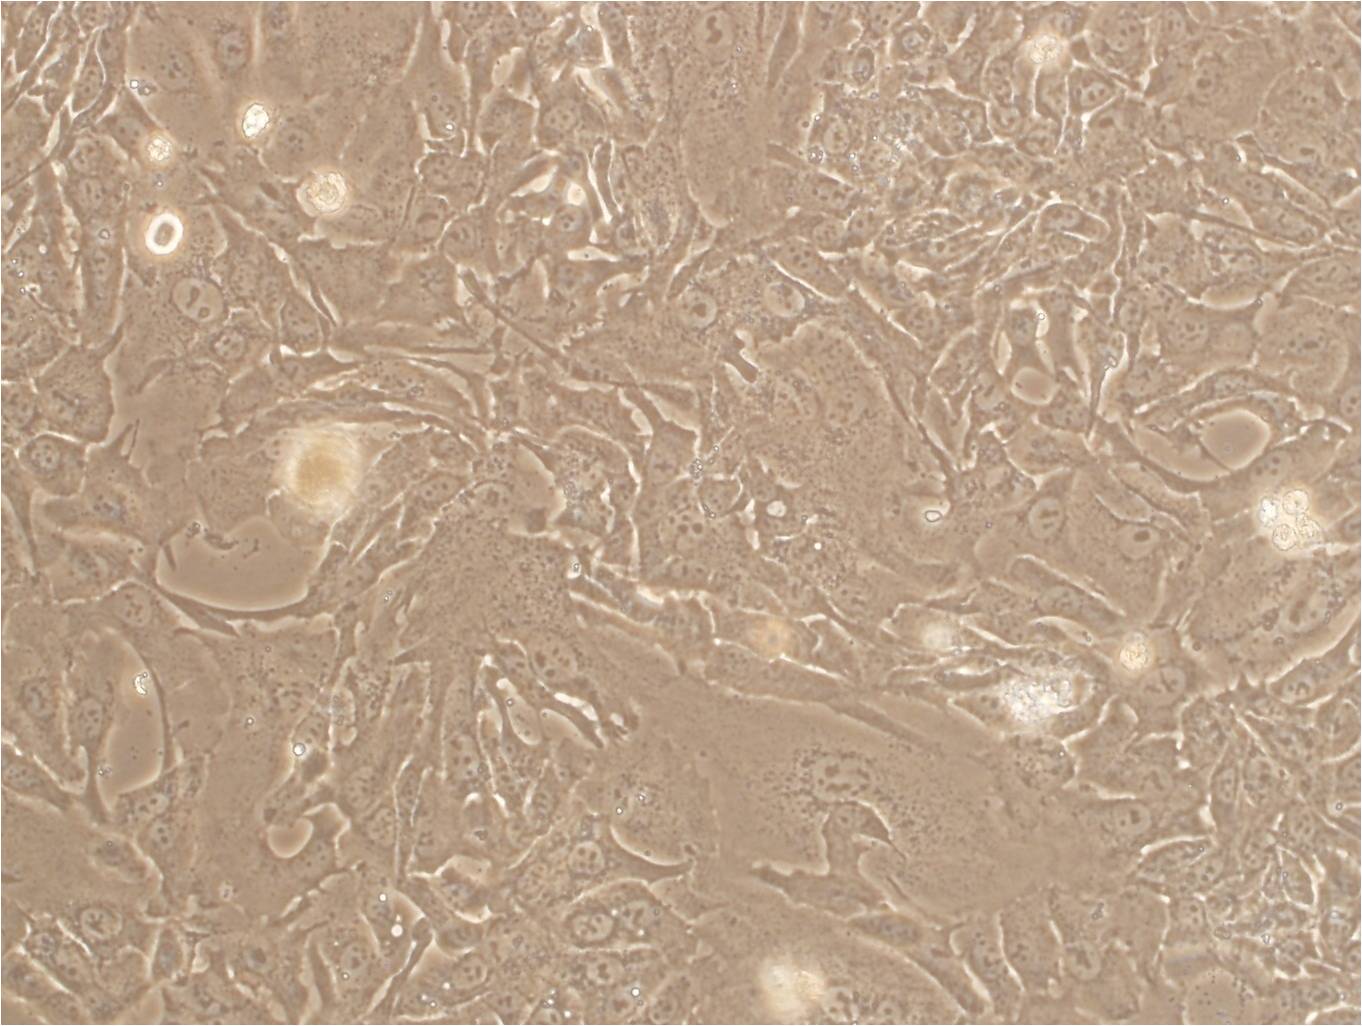 SW982 Cells|人滑膜肉瘤可传代细胞系